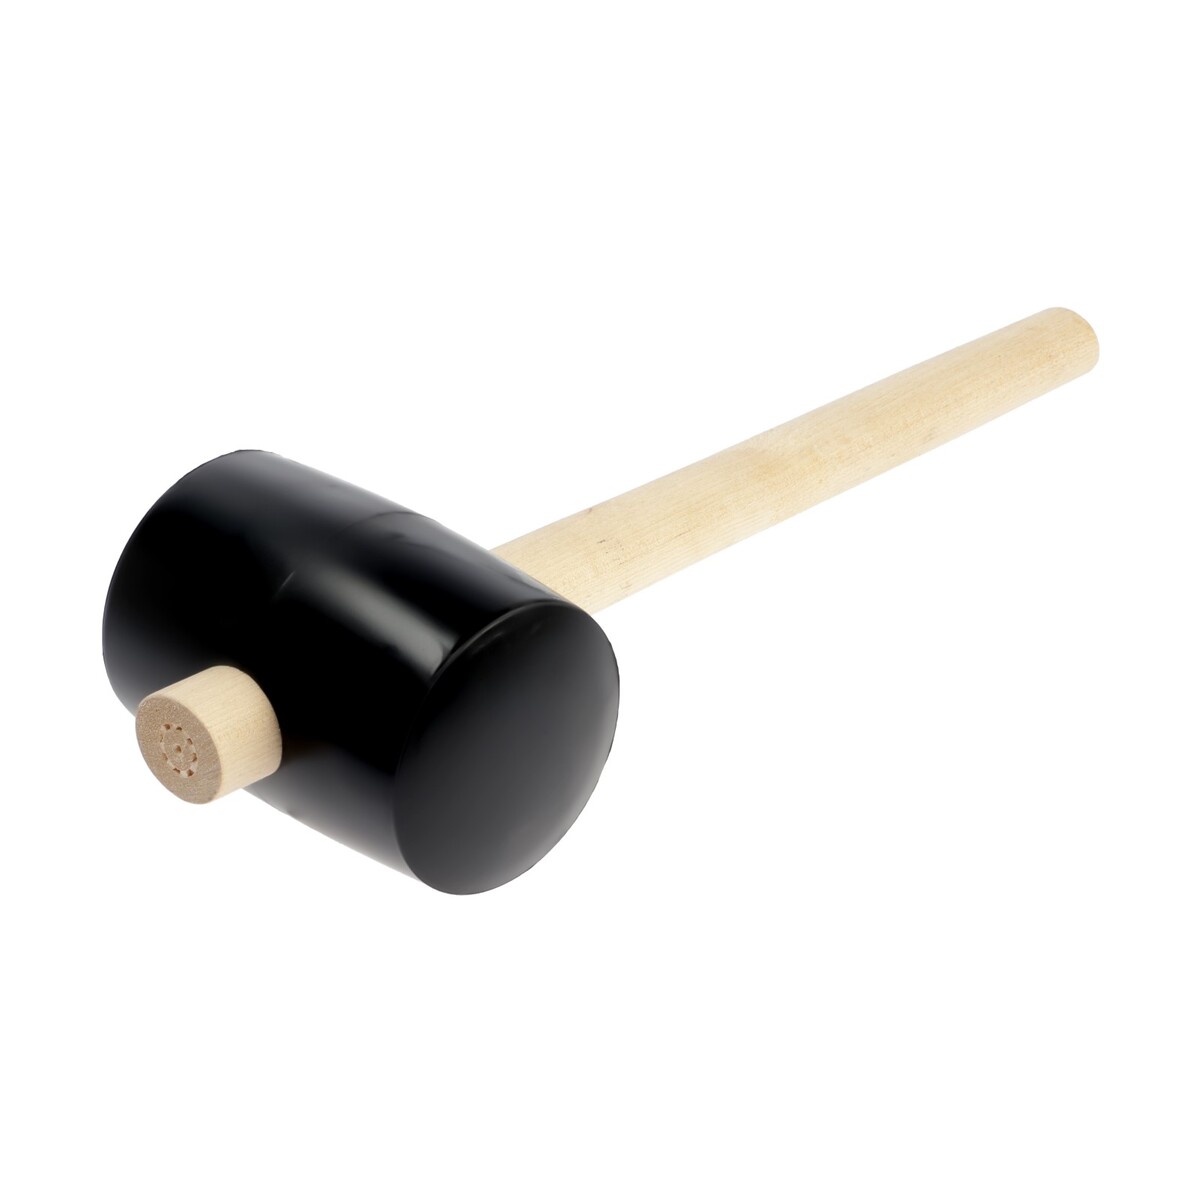 Киянка лом, деревянная рукоятка, черная резина, 90 мм, 1000 г киянка тундра деревянная рукоятка черная резина 225 г